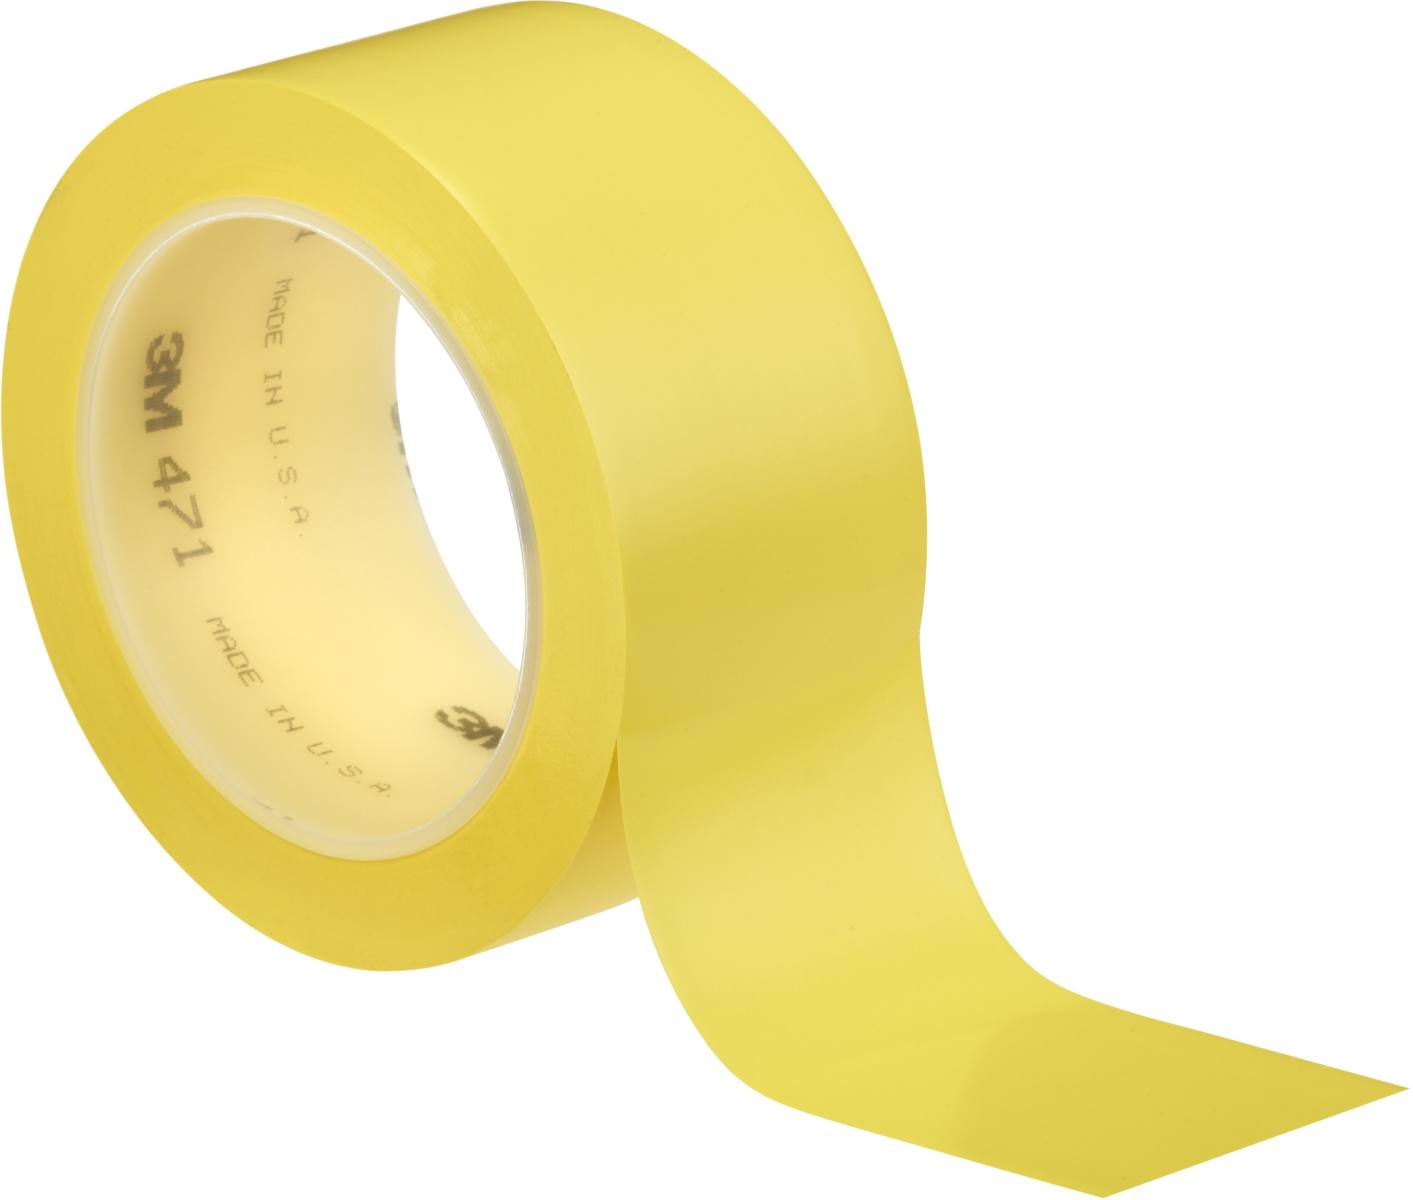 Cinta adhesiva de PVC blando 3M 471 F, amarilla, 50 mm x 33 m, 0,13 mm, embalada individualmente y de forma práctica